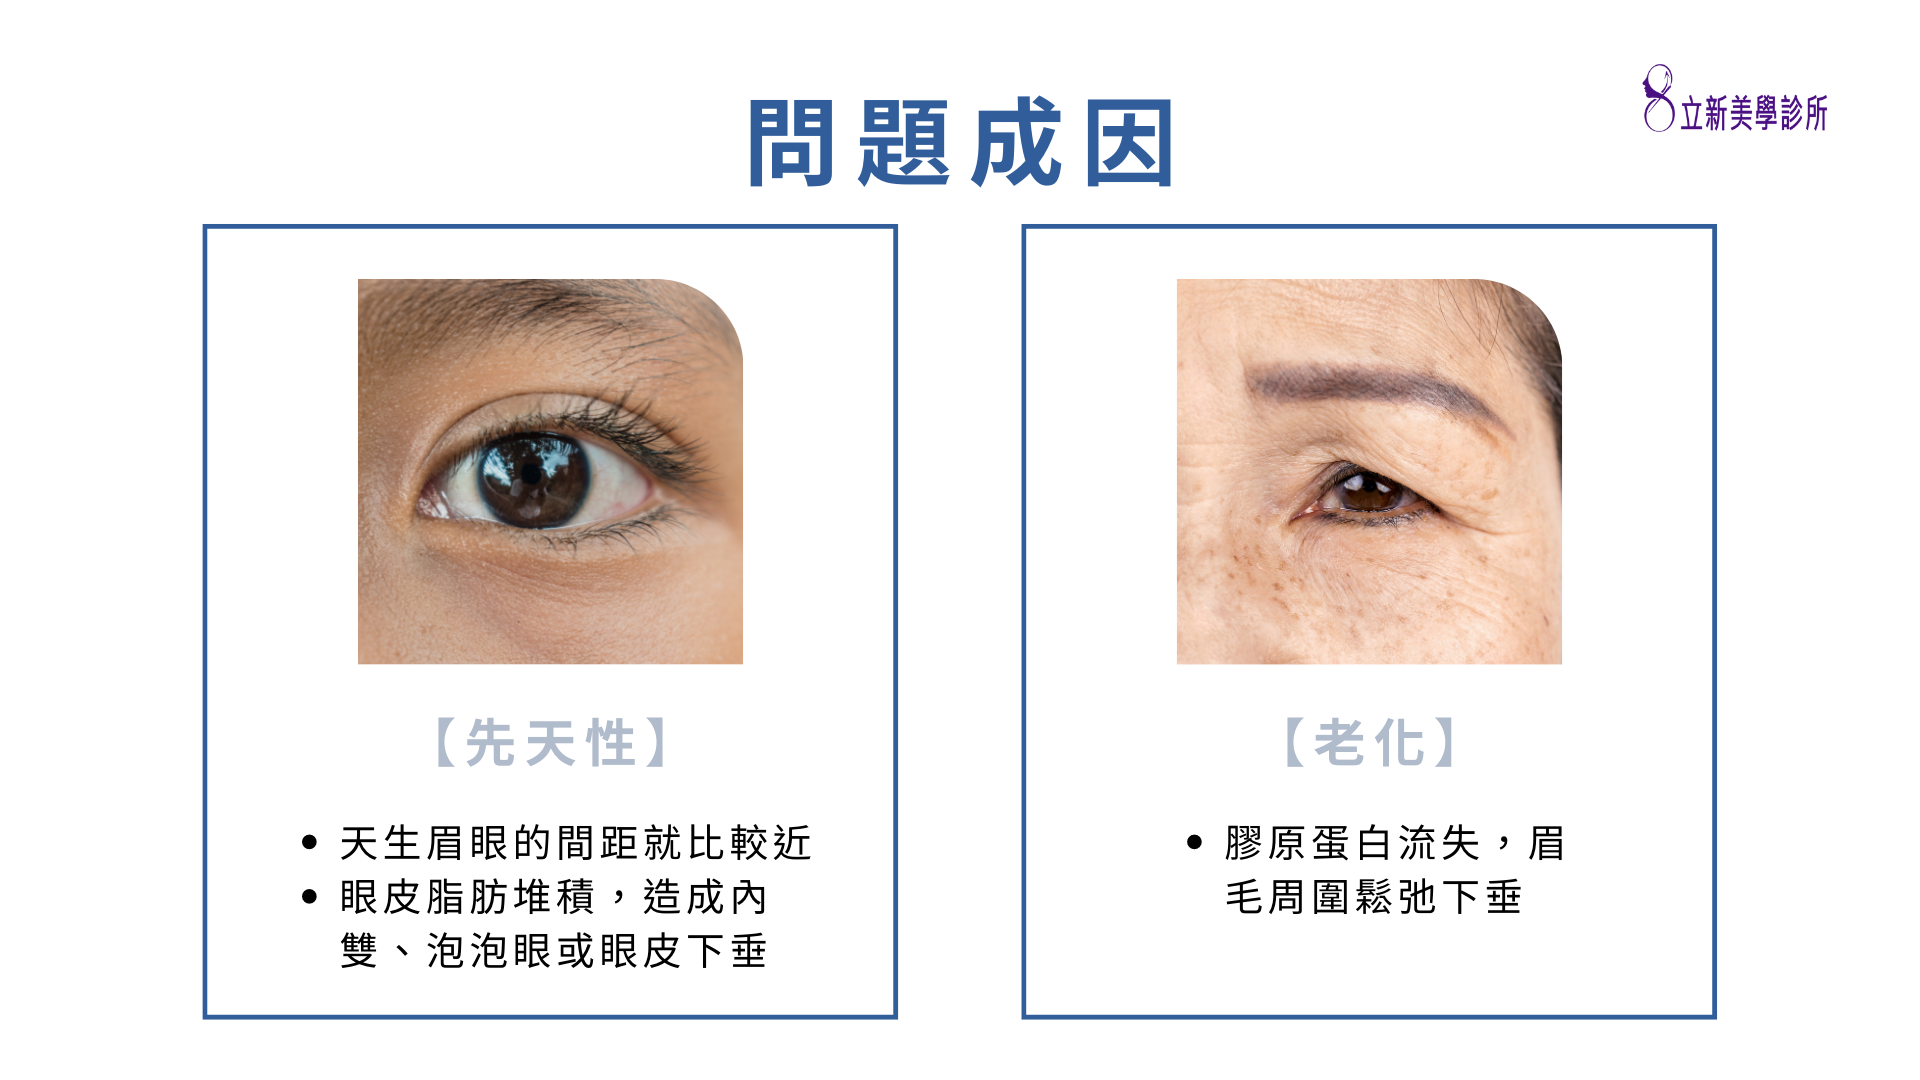 【先天性】 ·天生眉眼的間距就比較近 ·眼皮脂肪堆積,造成內 雙、泡泡眼或眼皮下垂，【老化】 ·膠原蛋白流失,眉 毛周圍鬆弛下垂